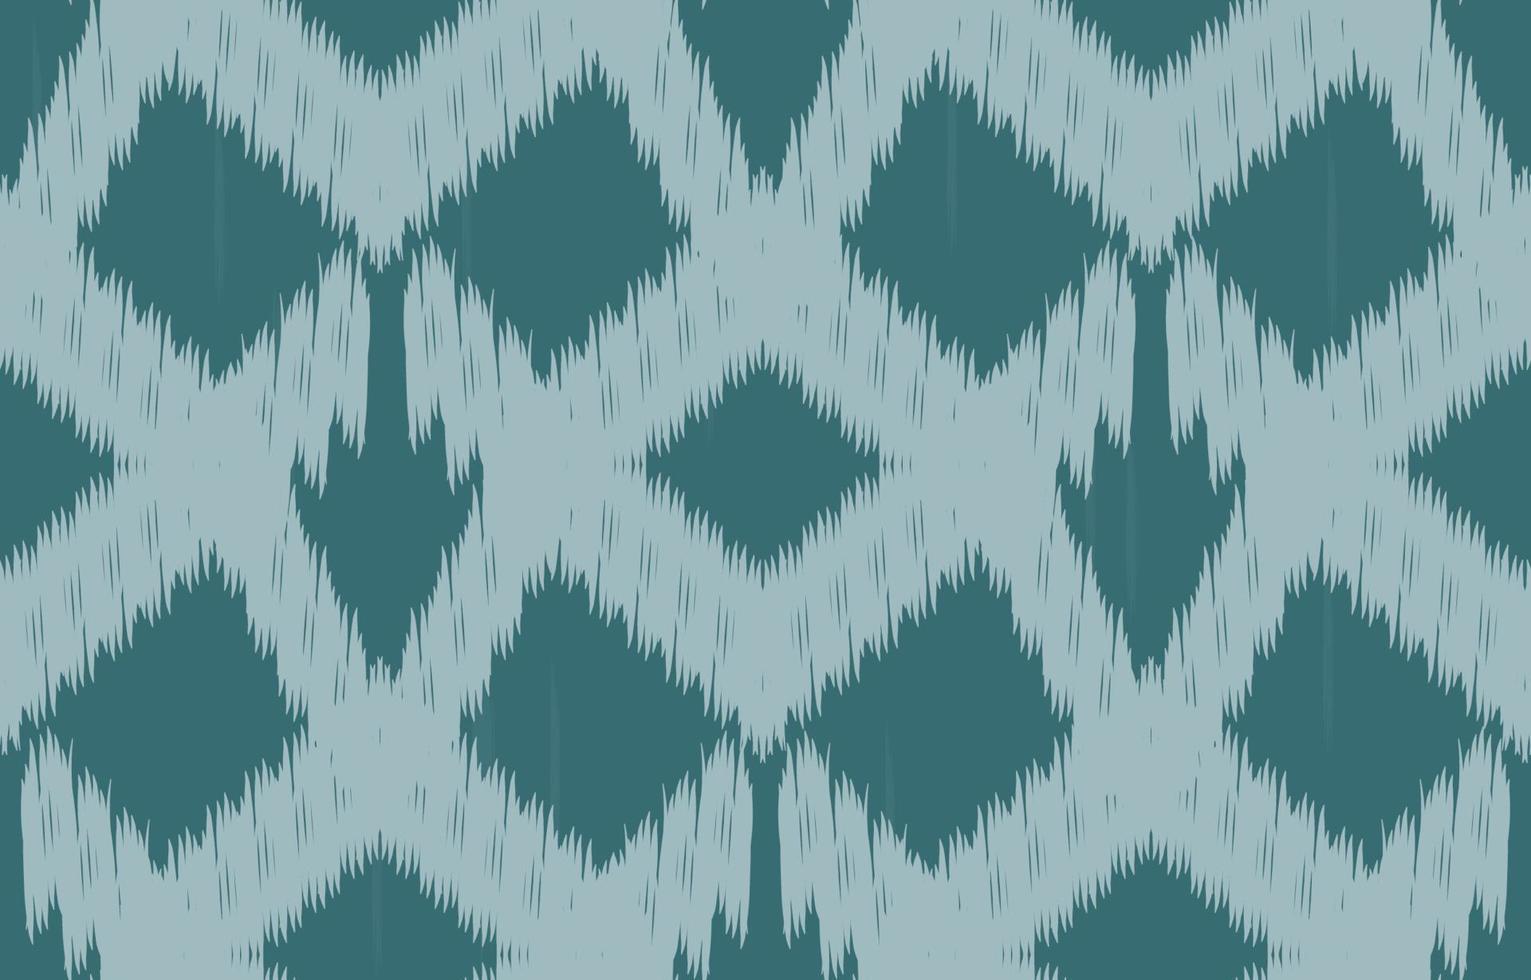 tela ikat azul de patrones sin fisuras geométrico étnico oriental bordado tradicional style.design para fondo, alfombra, estera, papel pintado, ropa, envoltura, batik, ilustración vectorial. vector